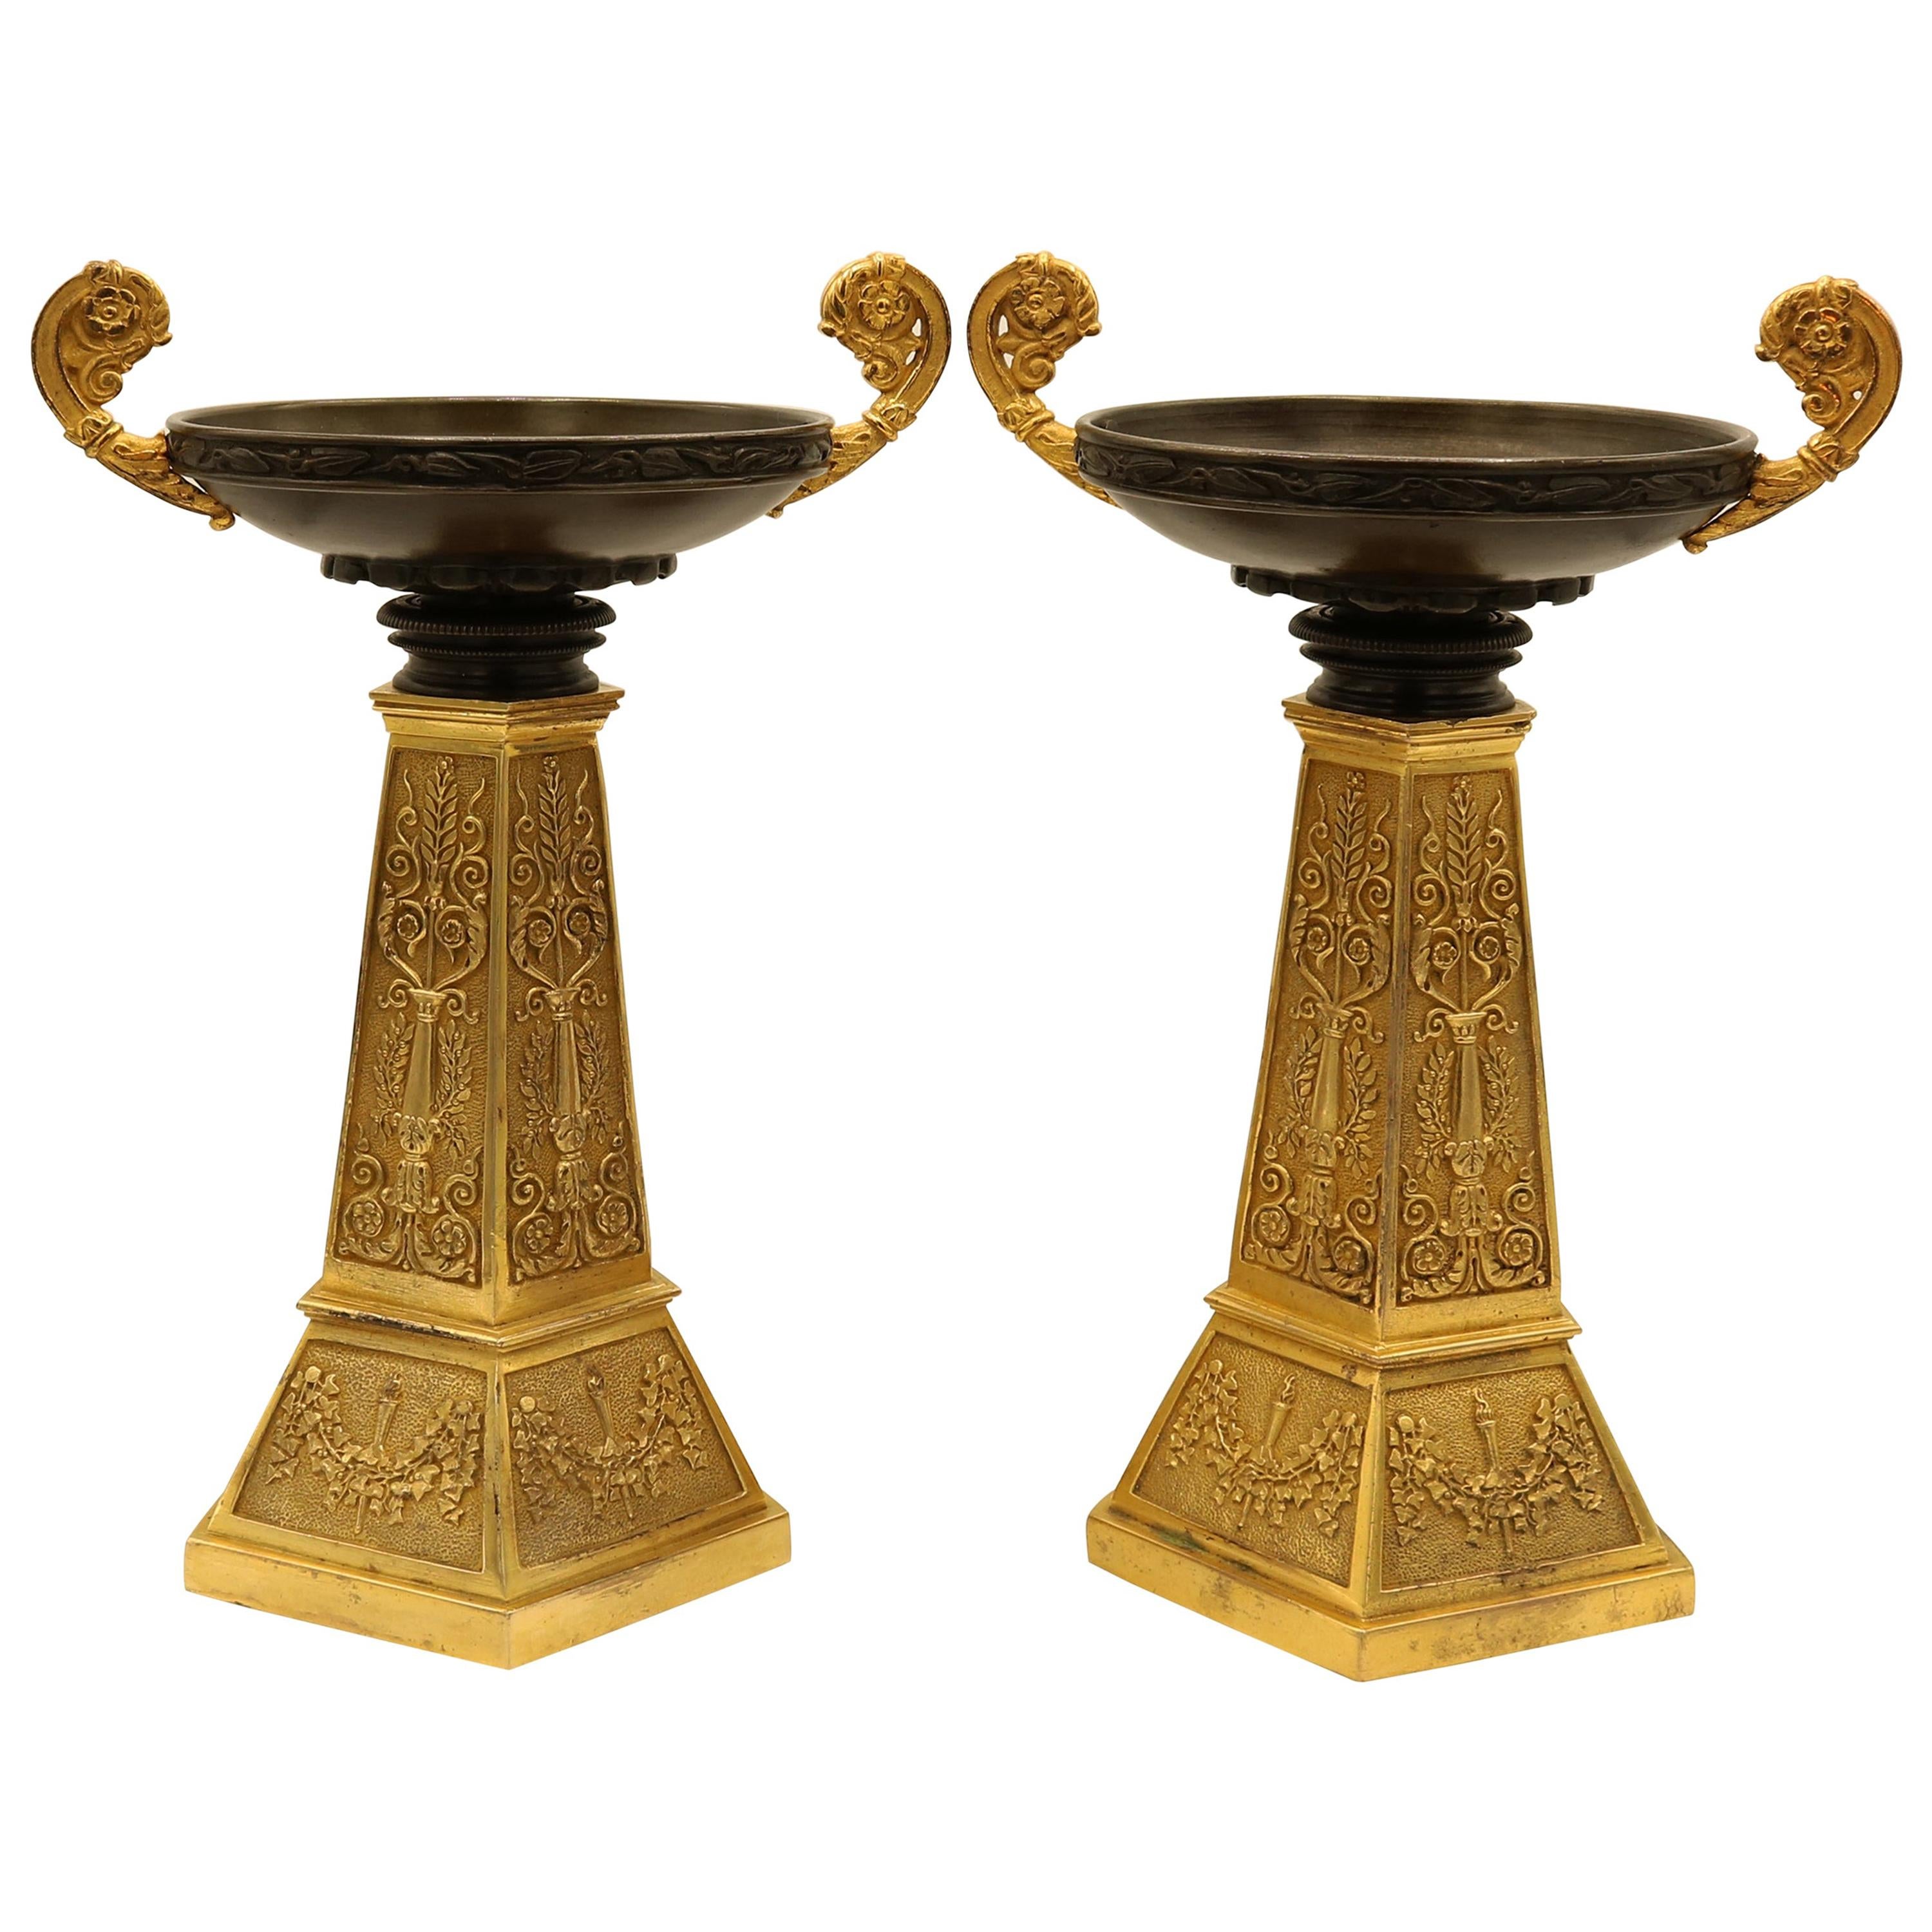 Pair of Bronze and Ormolu Tazzas of Unusual Design